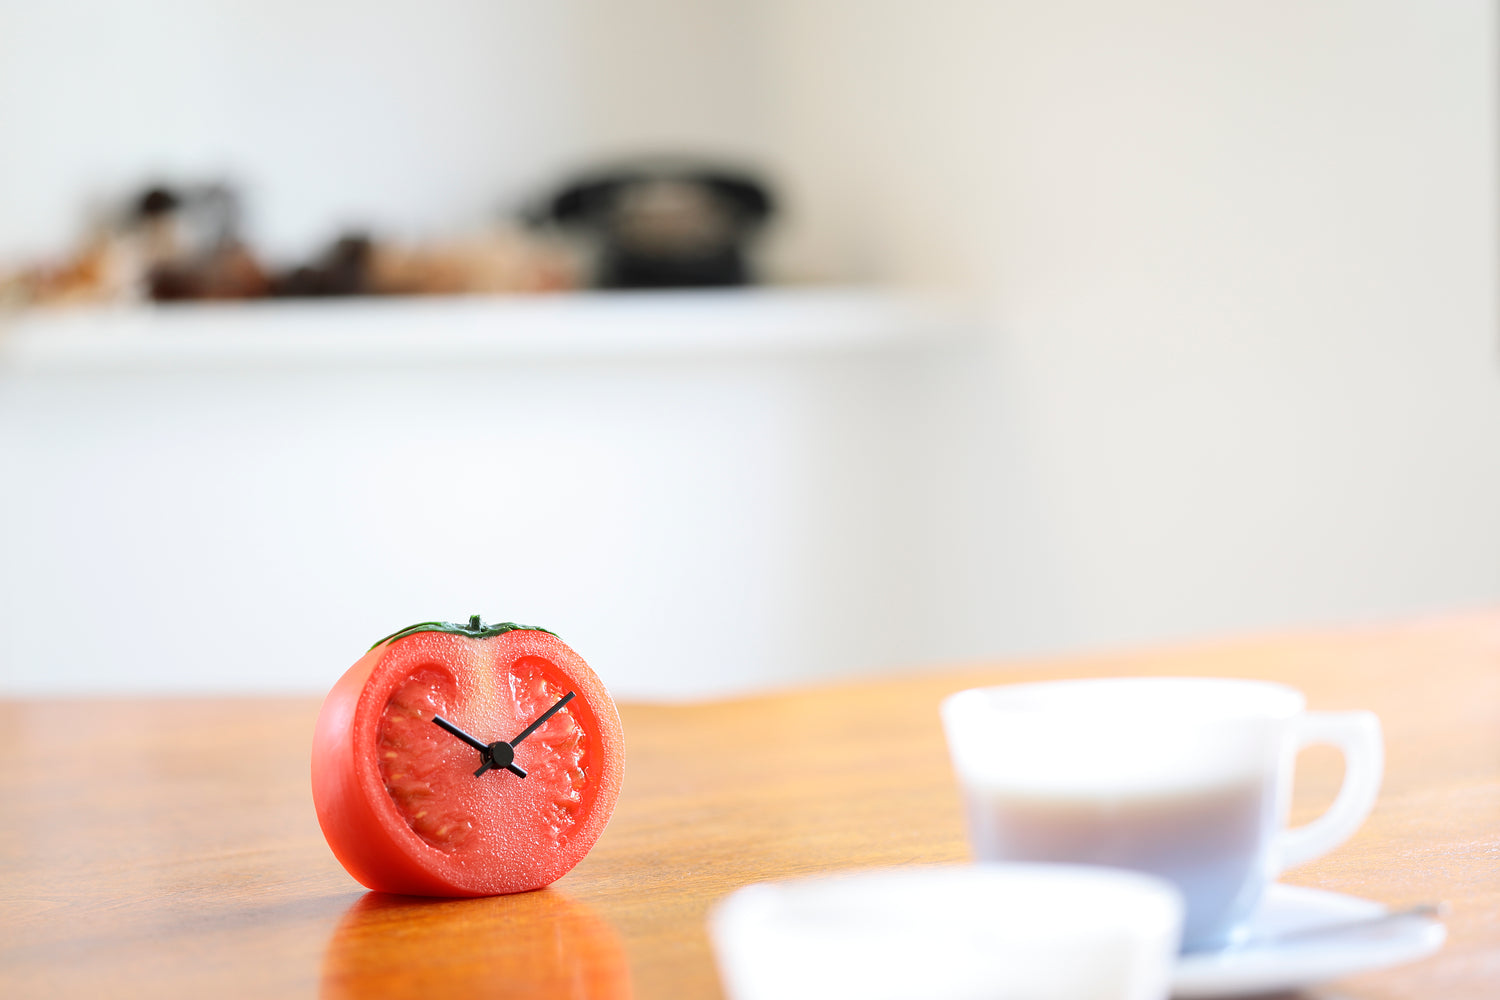 元祖食品サンプル屋「Replica Food Clock トマト」のテーブルに置いたイメージ画像です。